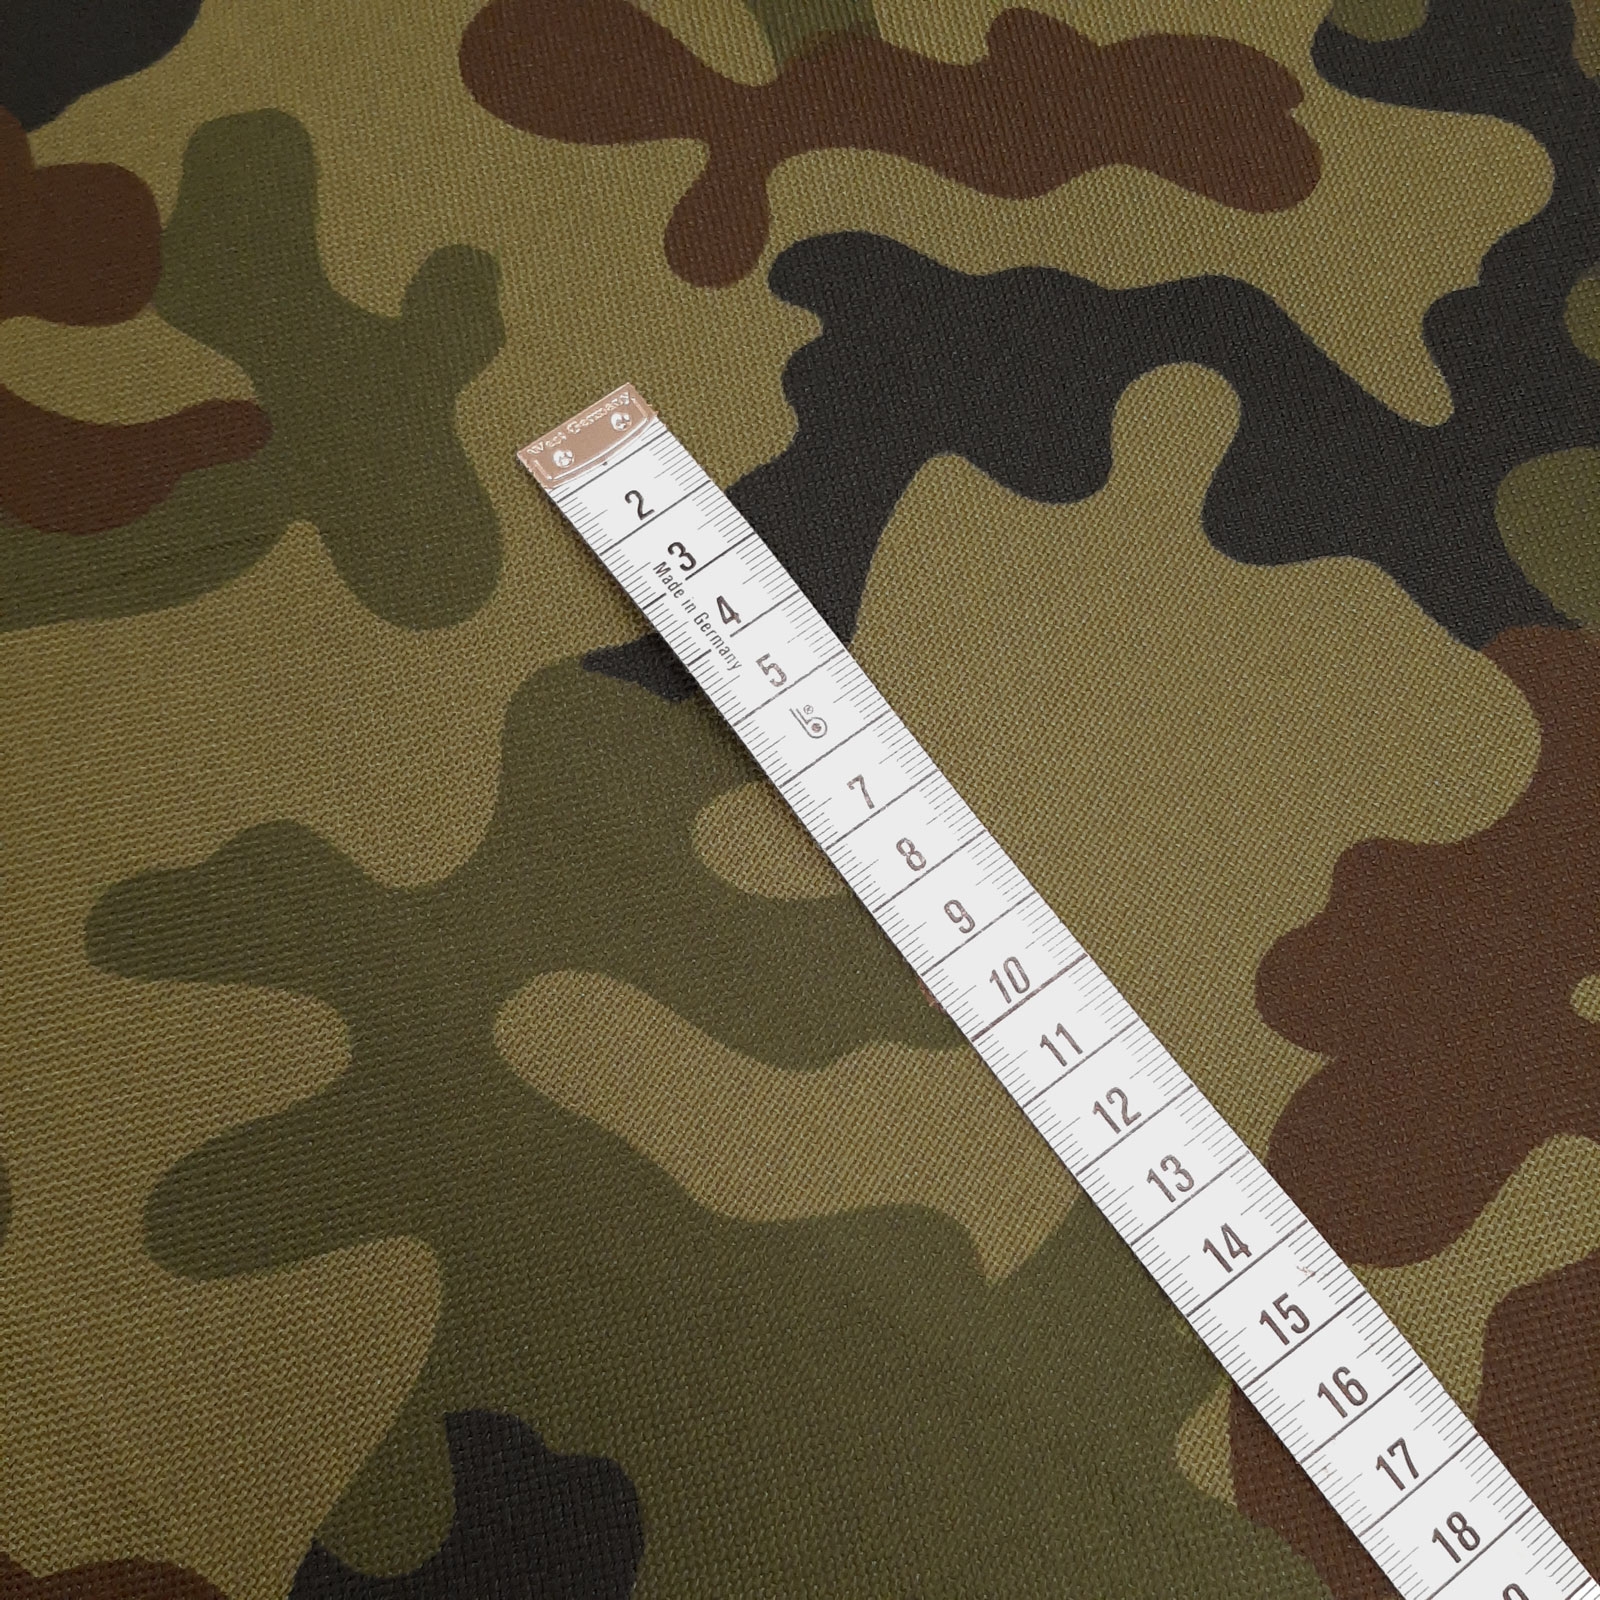 Bundi - PES camouflage fabric with coating